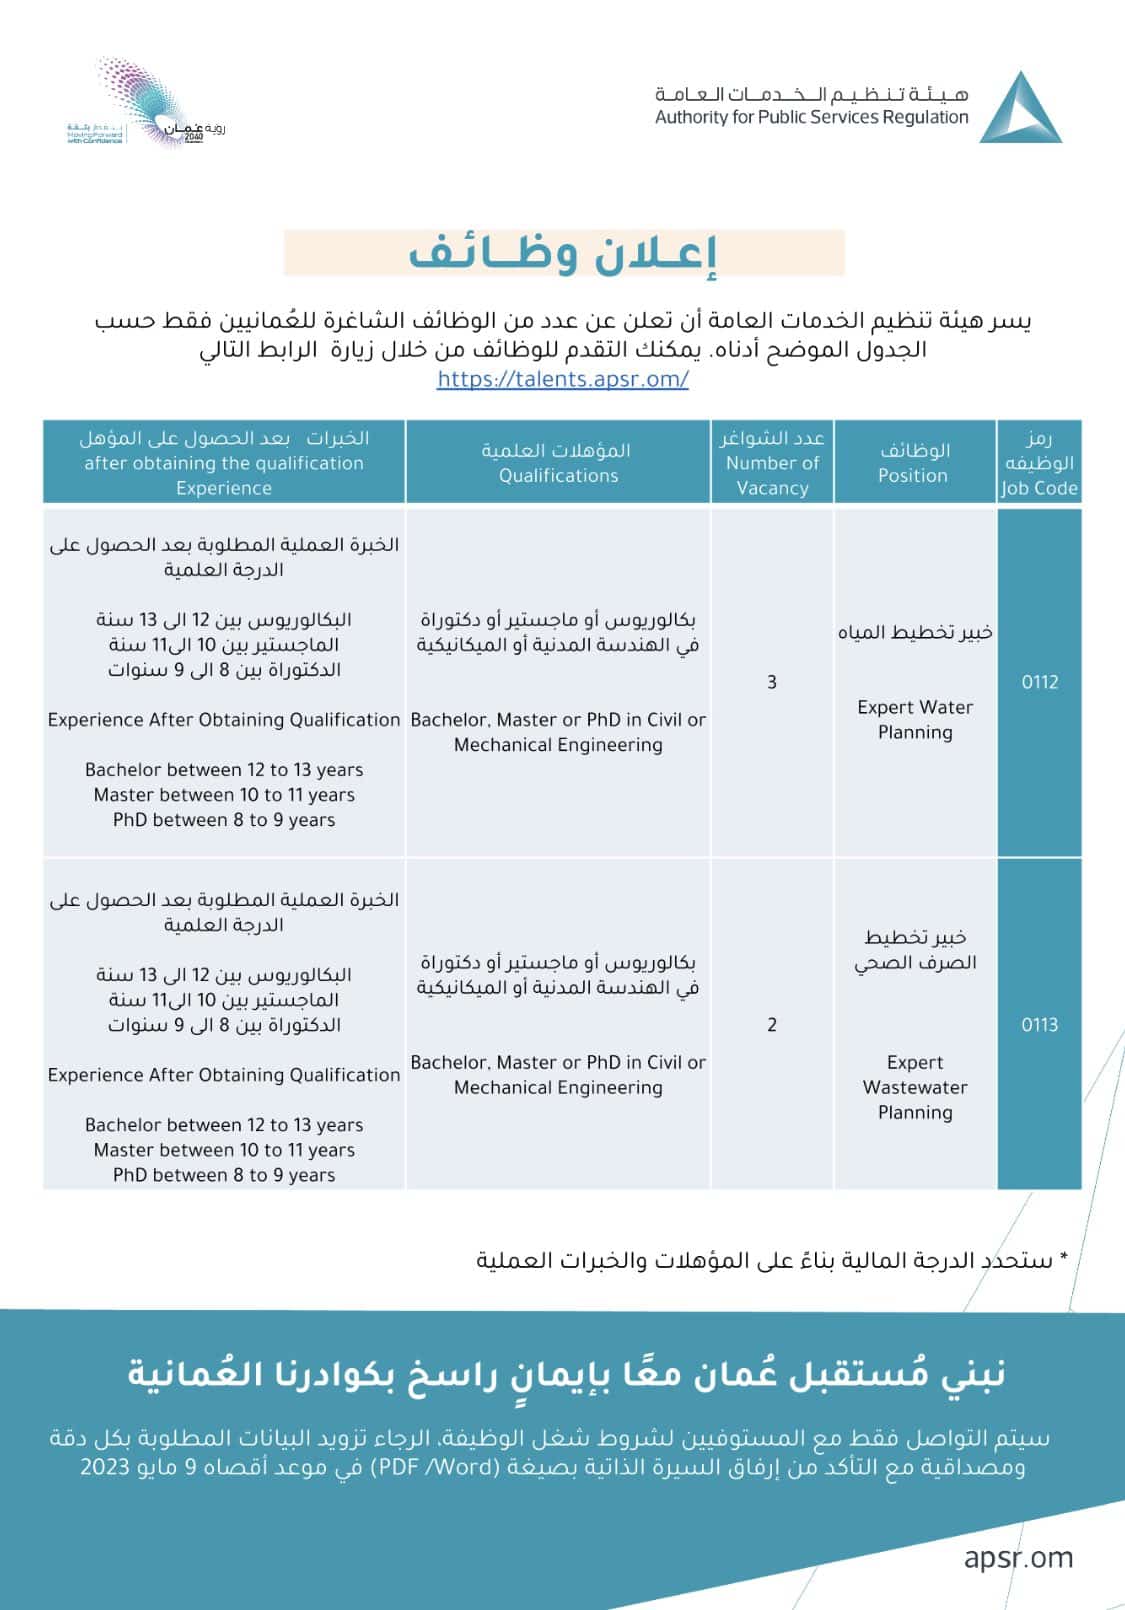 وظائف هيئة تنظيم الخدمات العامة 2023 في سلطنة عمان برواتب ومزايا عالية ... سجل الأن